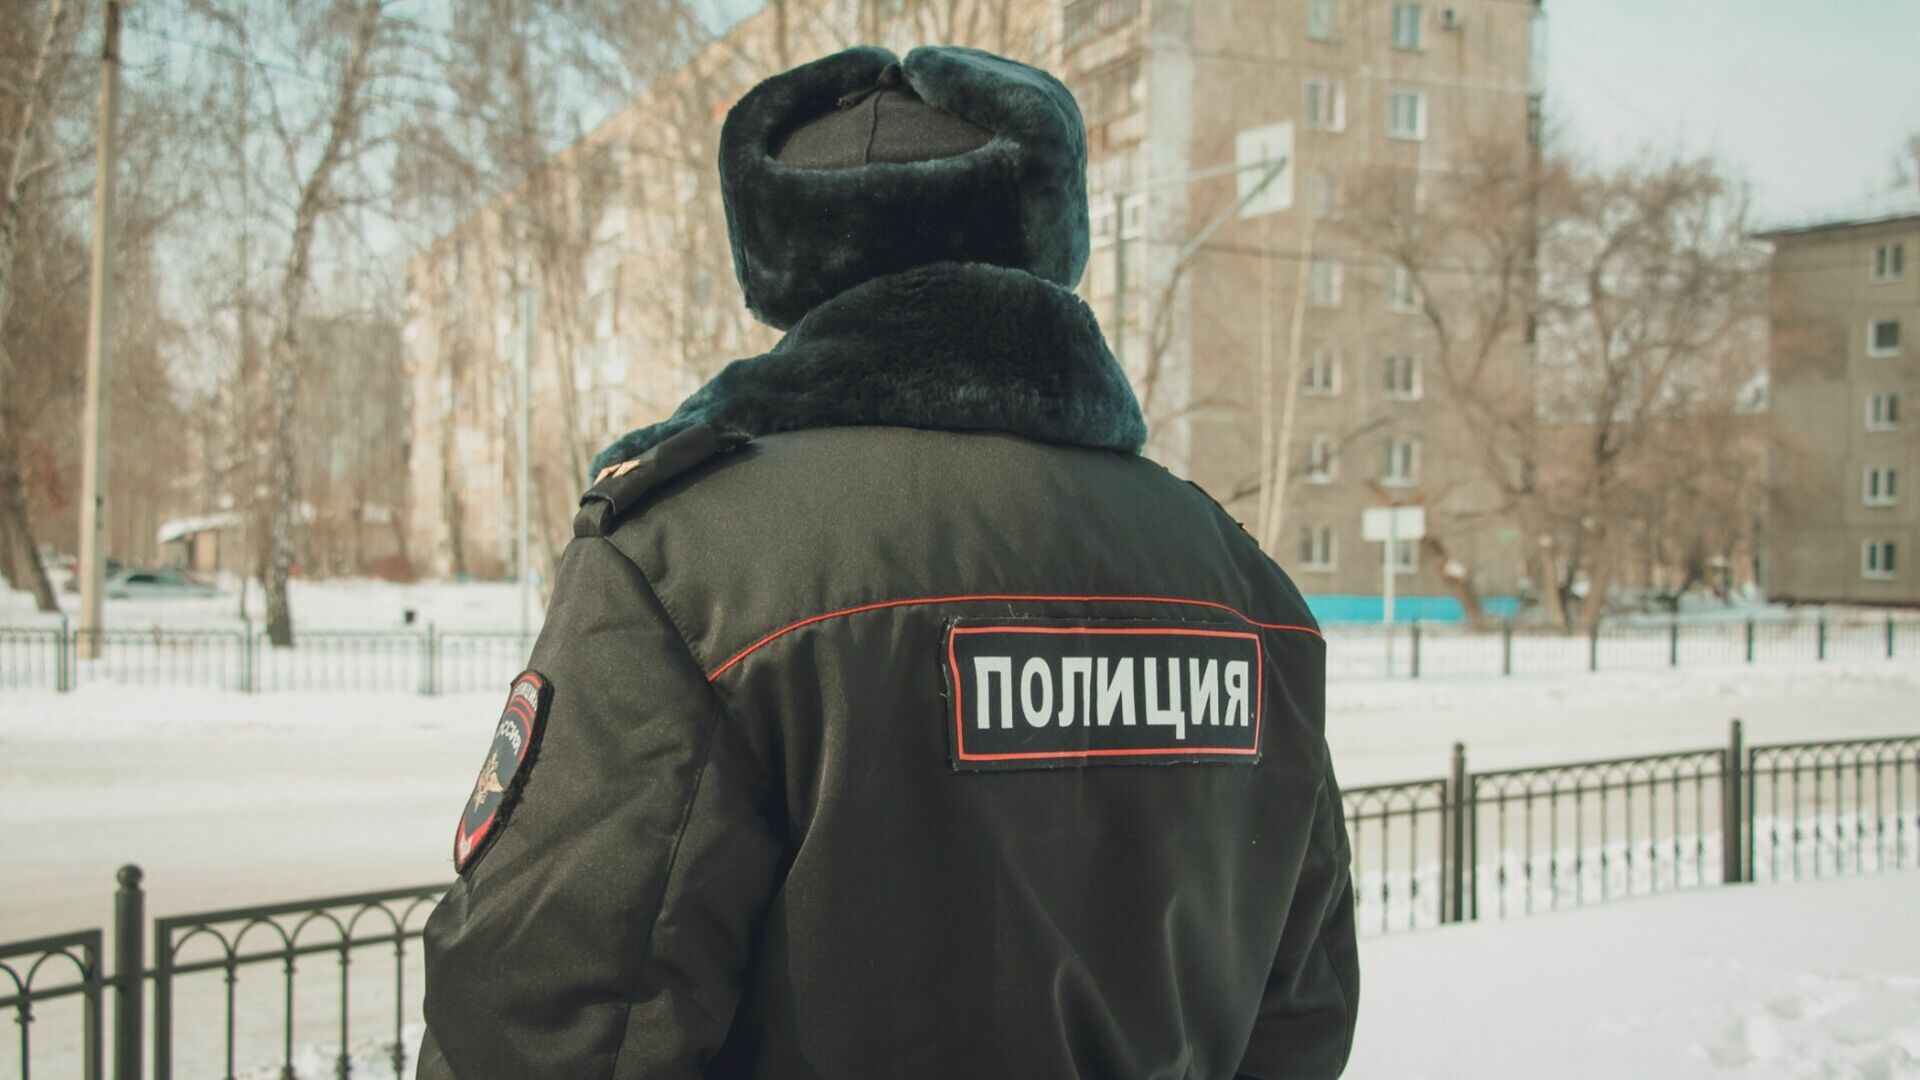 По иску полиции к экс-мэру Екатеринбурга Евгению Ройзману вынесено решение